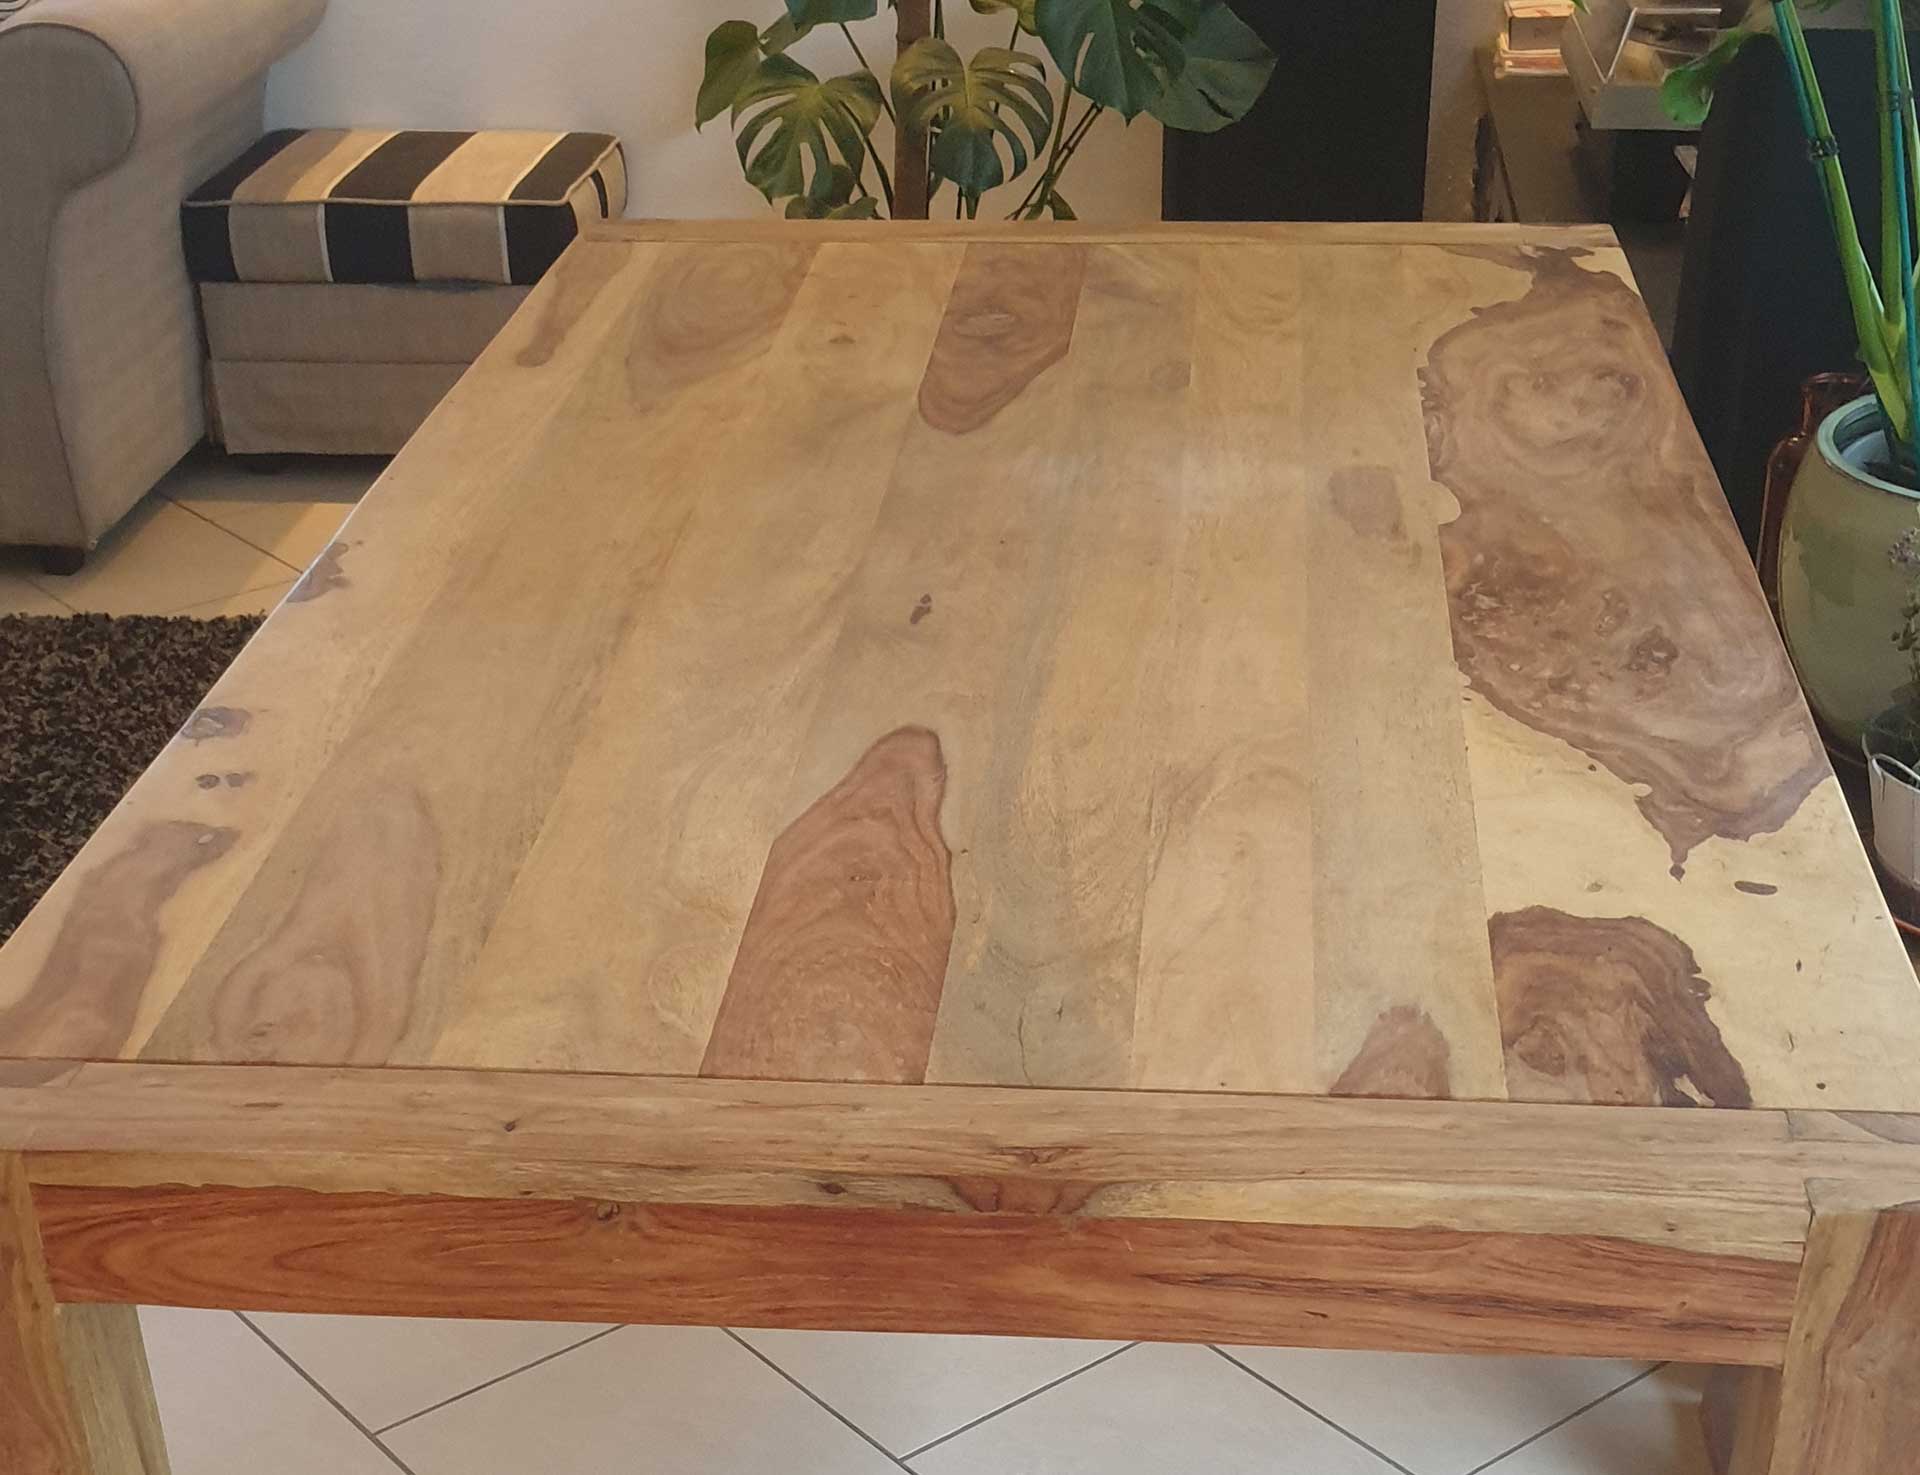 Auf dem Bild sieht man einen ausgeblichenen, ausgetrockneten und spröden Esstisch aus Holz